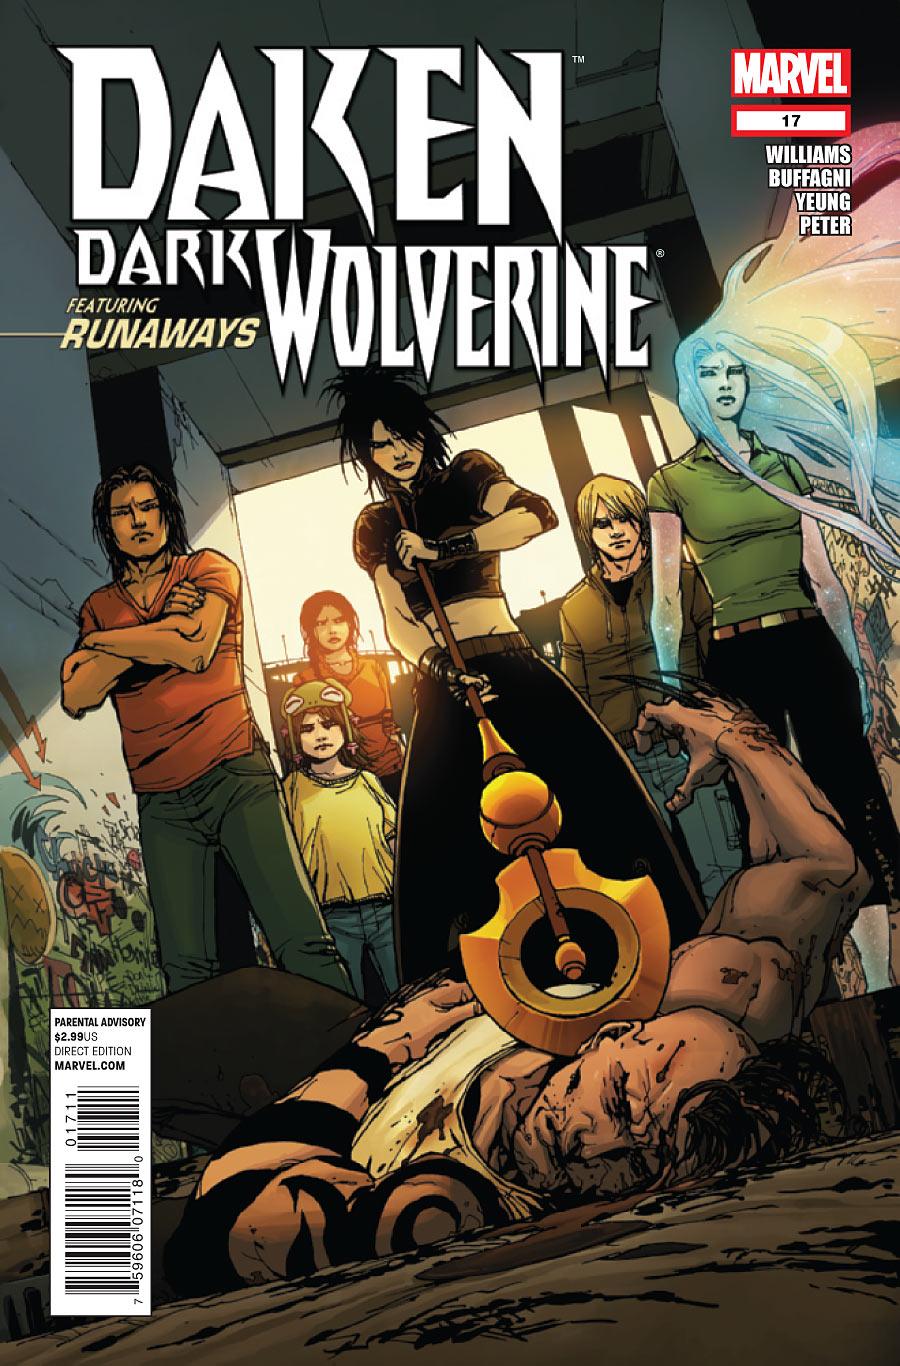 Daken: Dark Wolverine Vol. 1 #17